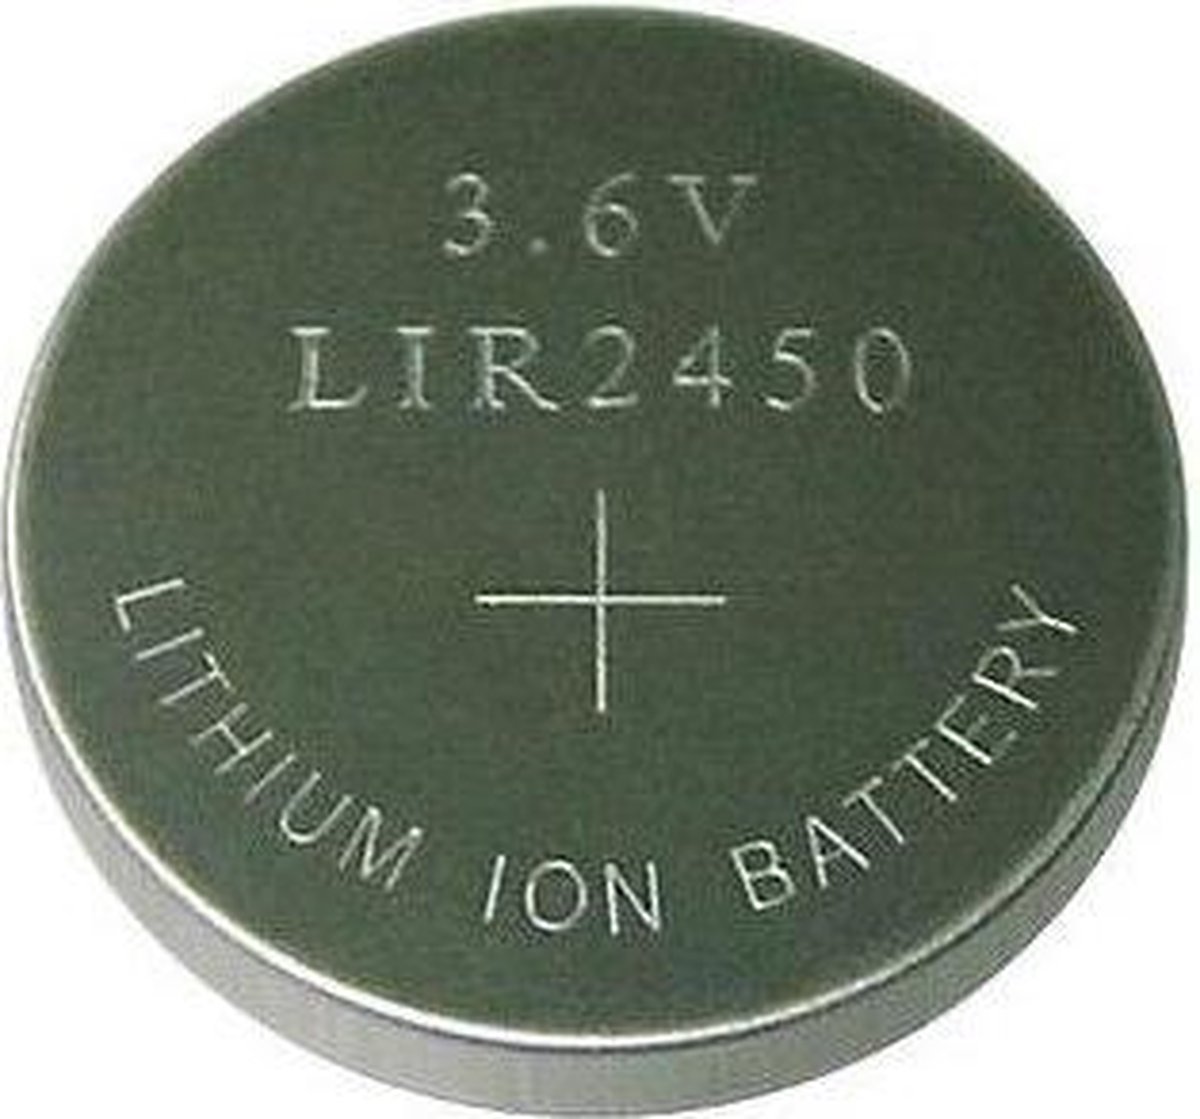 1 Stuk - LIR2450 3.6V 120mAh oplaadbare Li-ion knoopcel batterij | bol.com